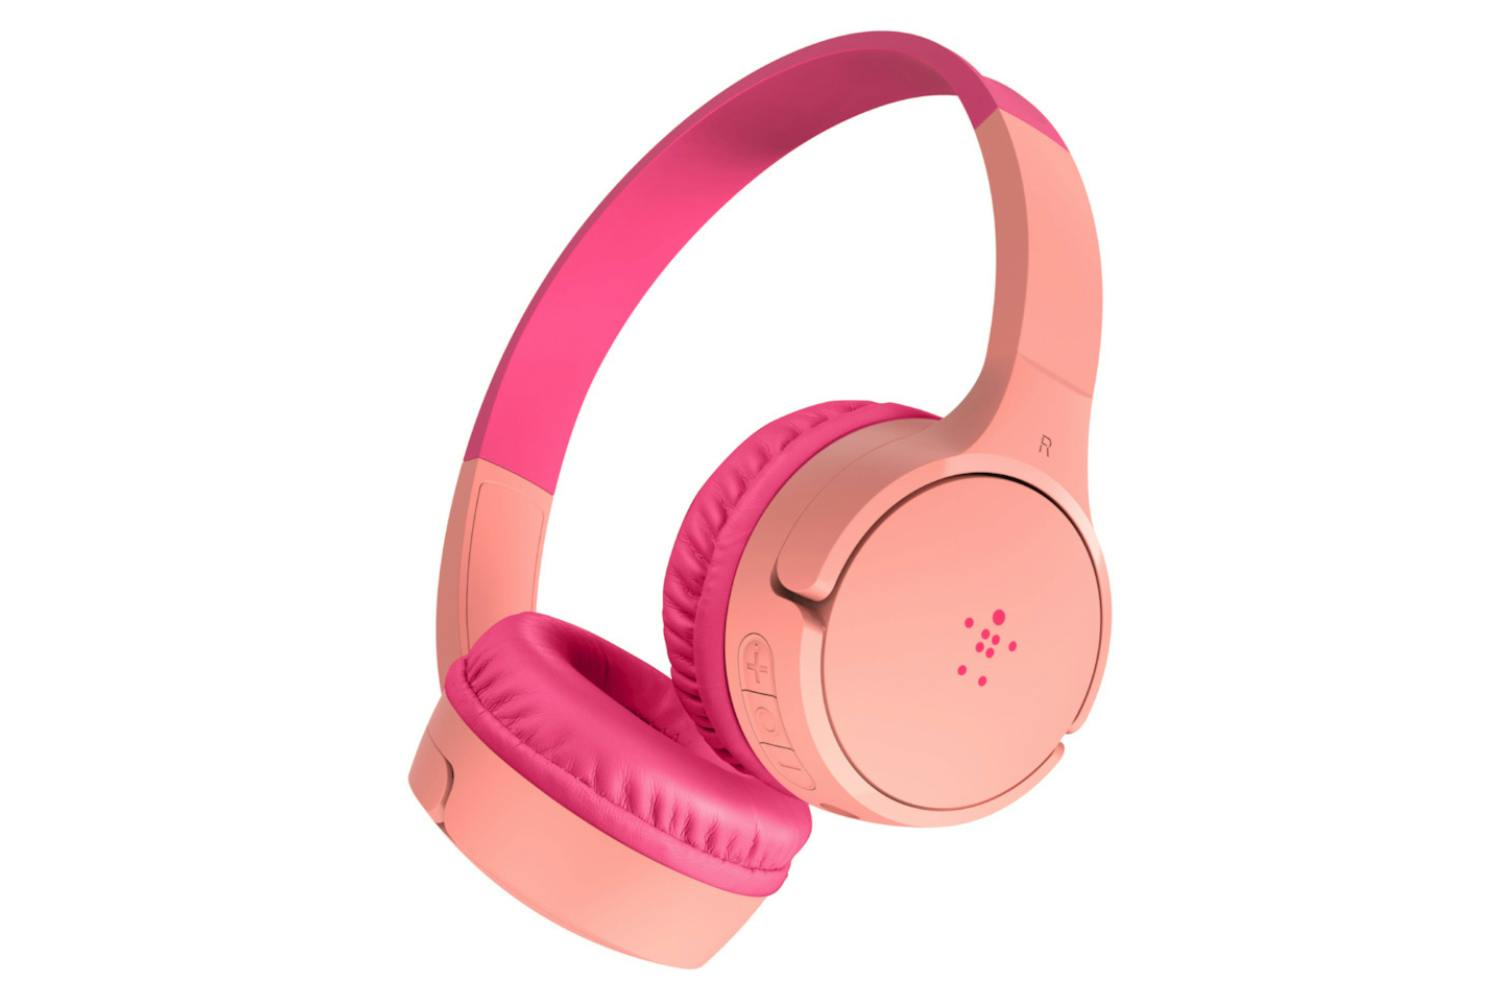 Belkin Soundform Mini On-Ear Wireless Kids Headphones | Pink